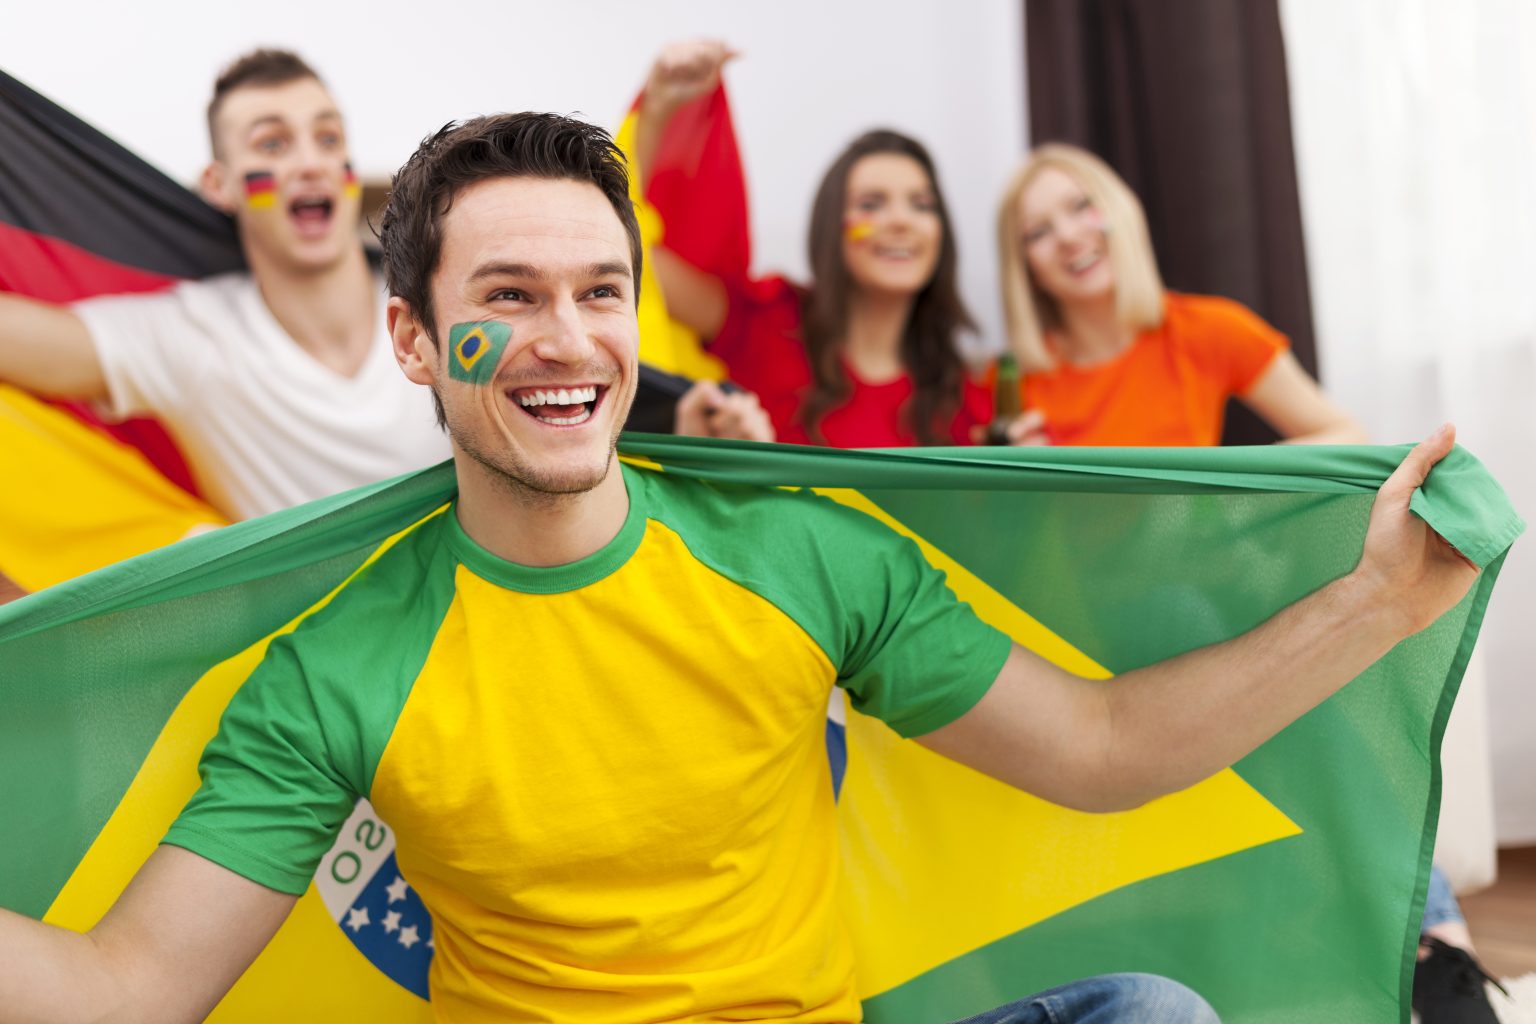 Jogos do Brasil: o que diz a CLT sobre a dispensa de funcionários